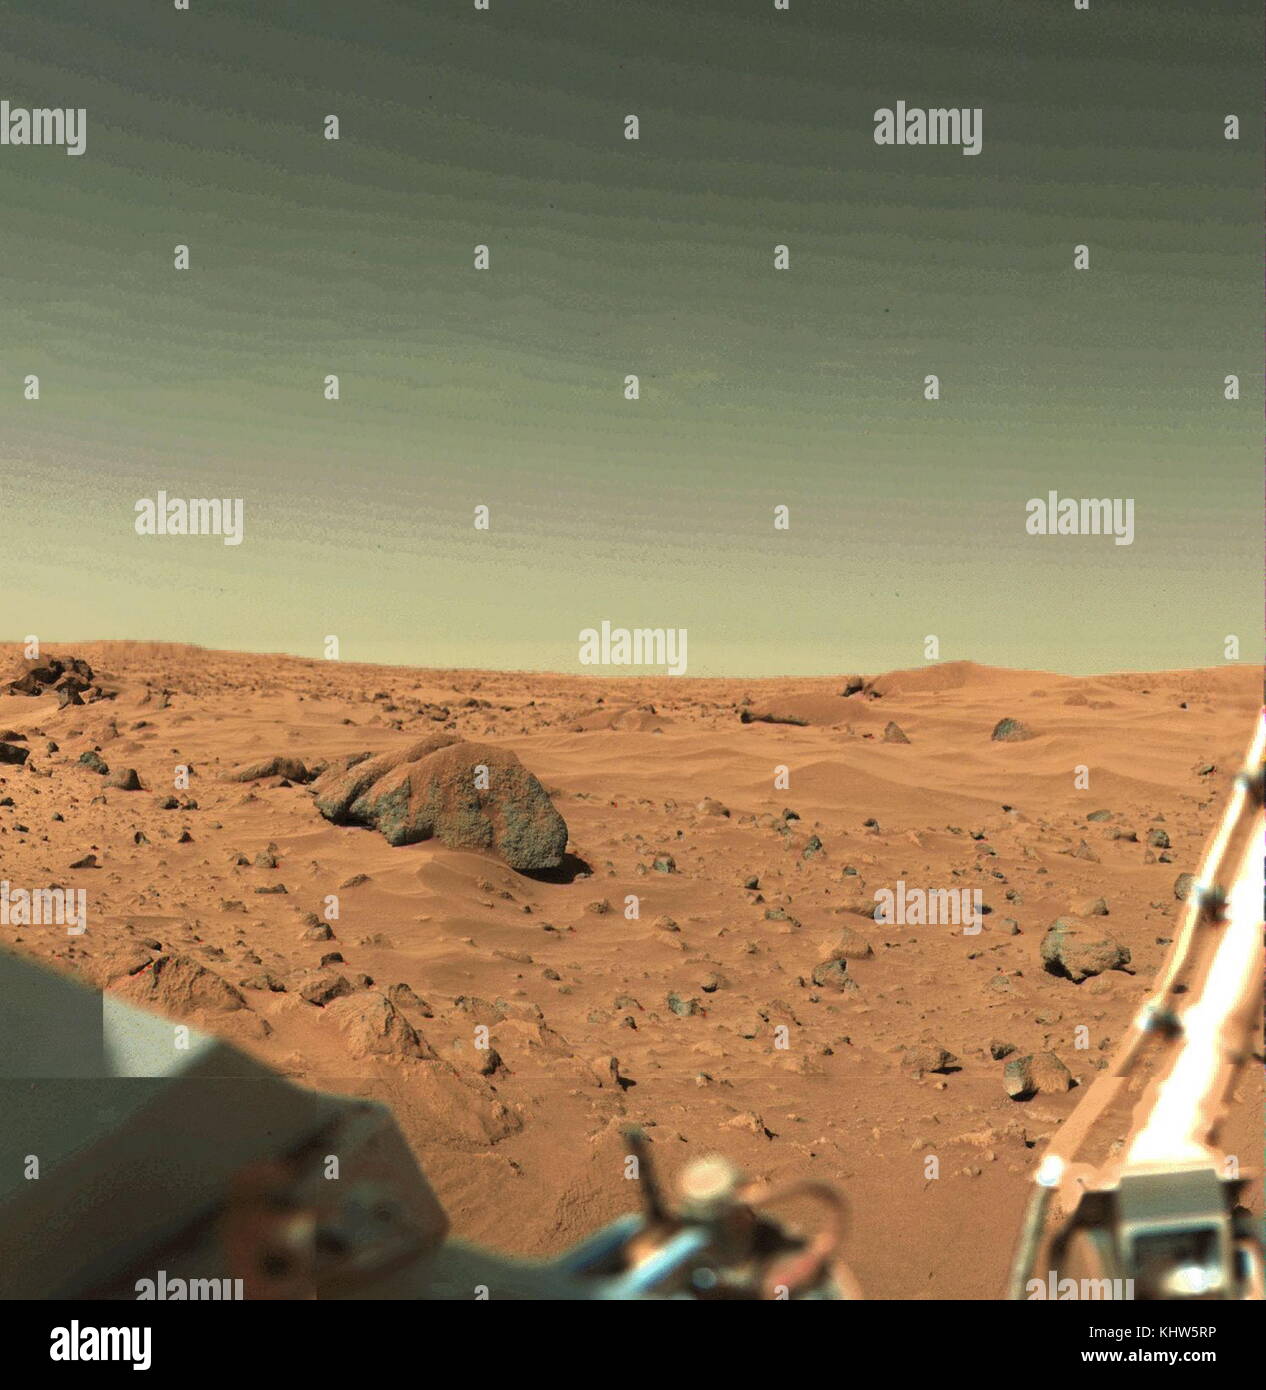 Fotografia Panoramica prese su Marte dalla Viking 2 Astrobiologia laboratorio sul campo, una navicella spaziale che è stato quello di condurre una ricerca di robotica per la vita su Marte. Recante la data del XXI secolo Foto Stock